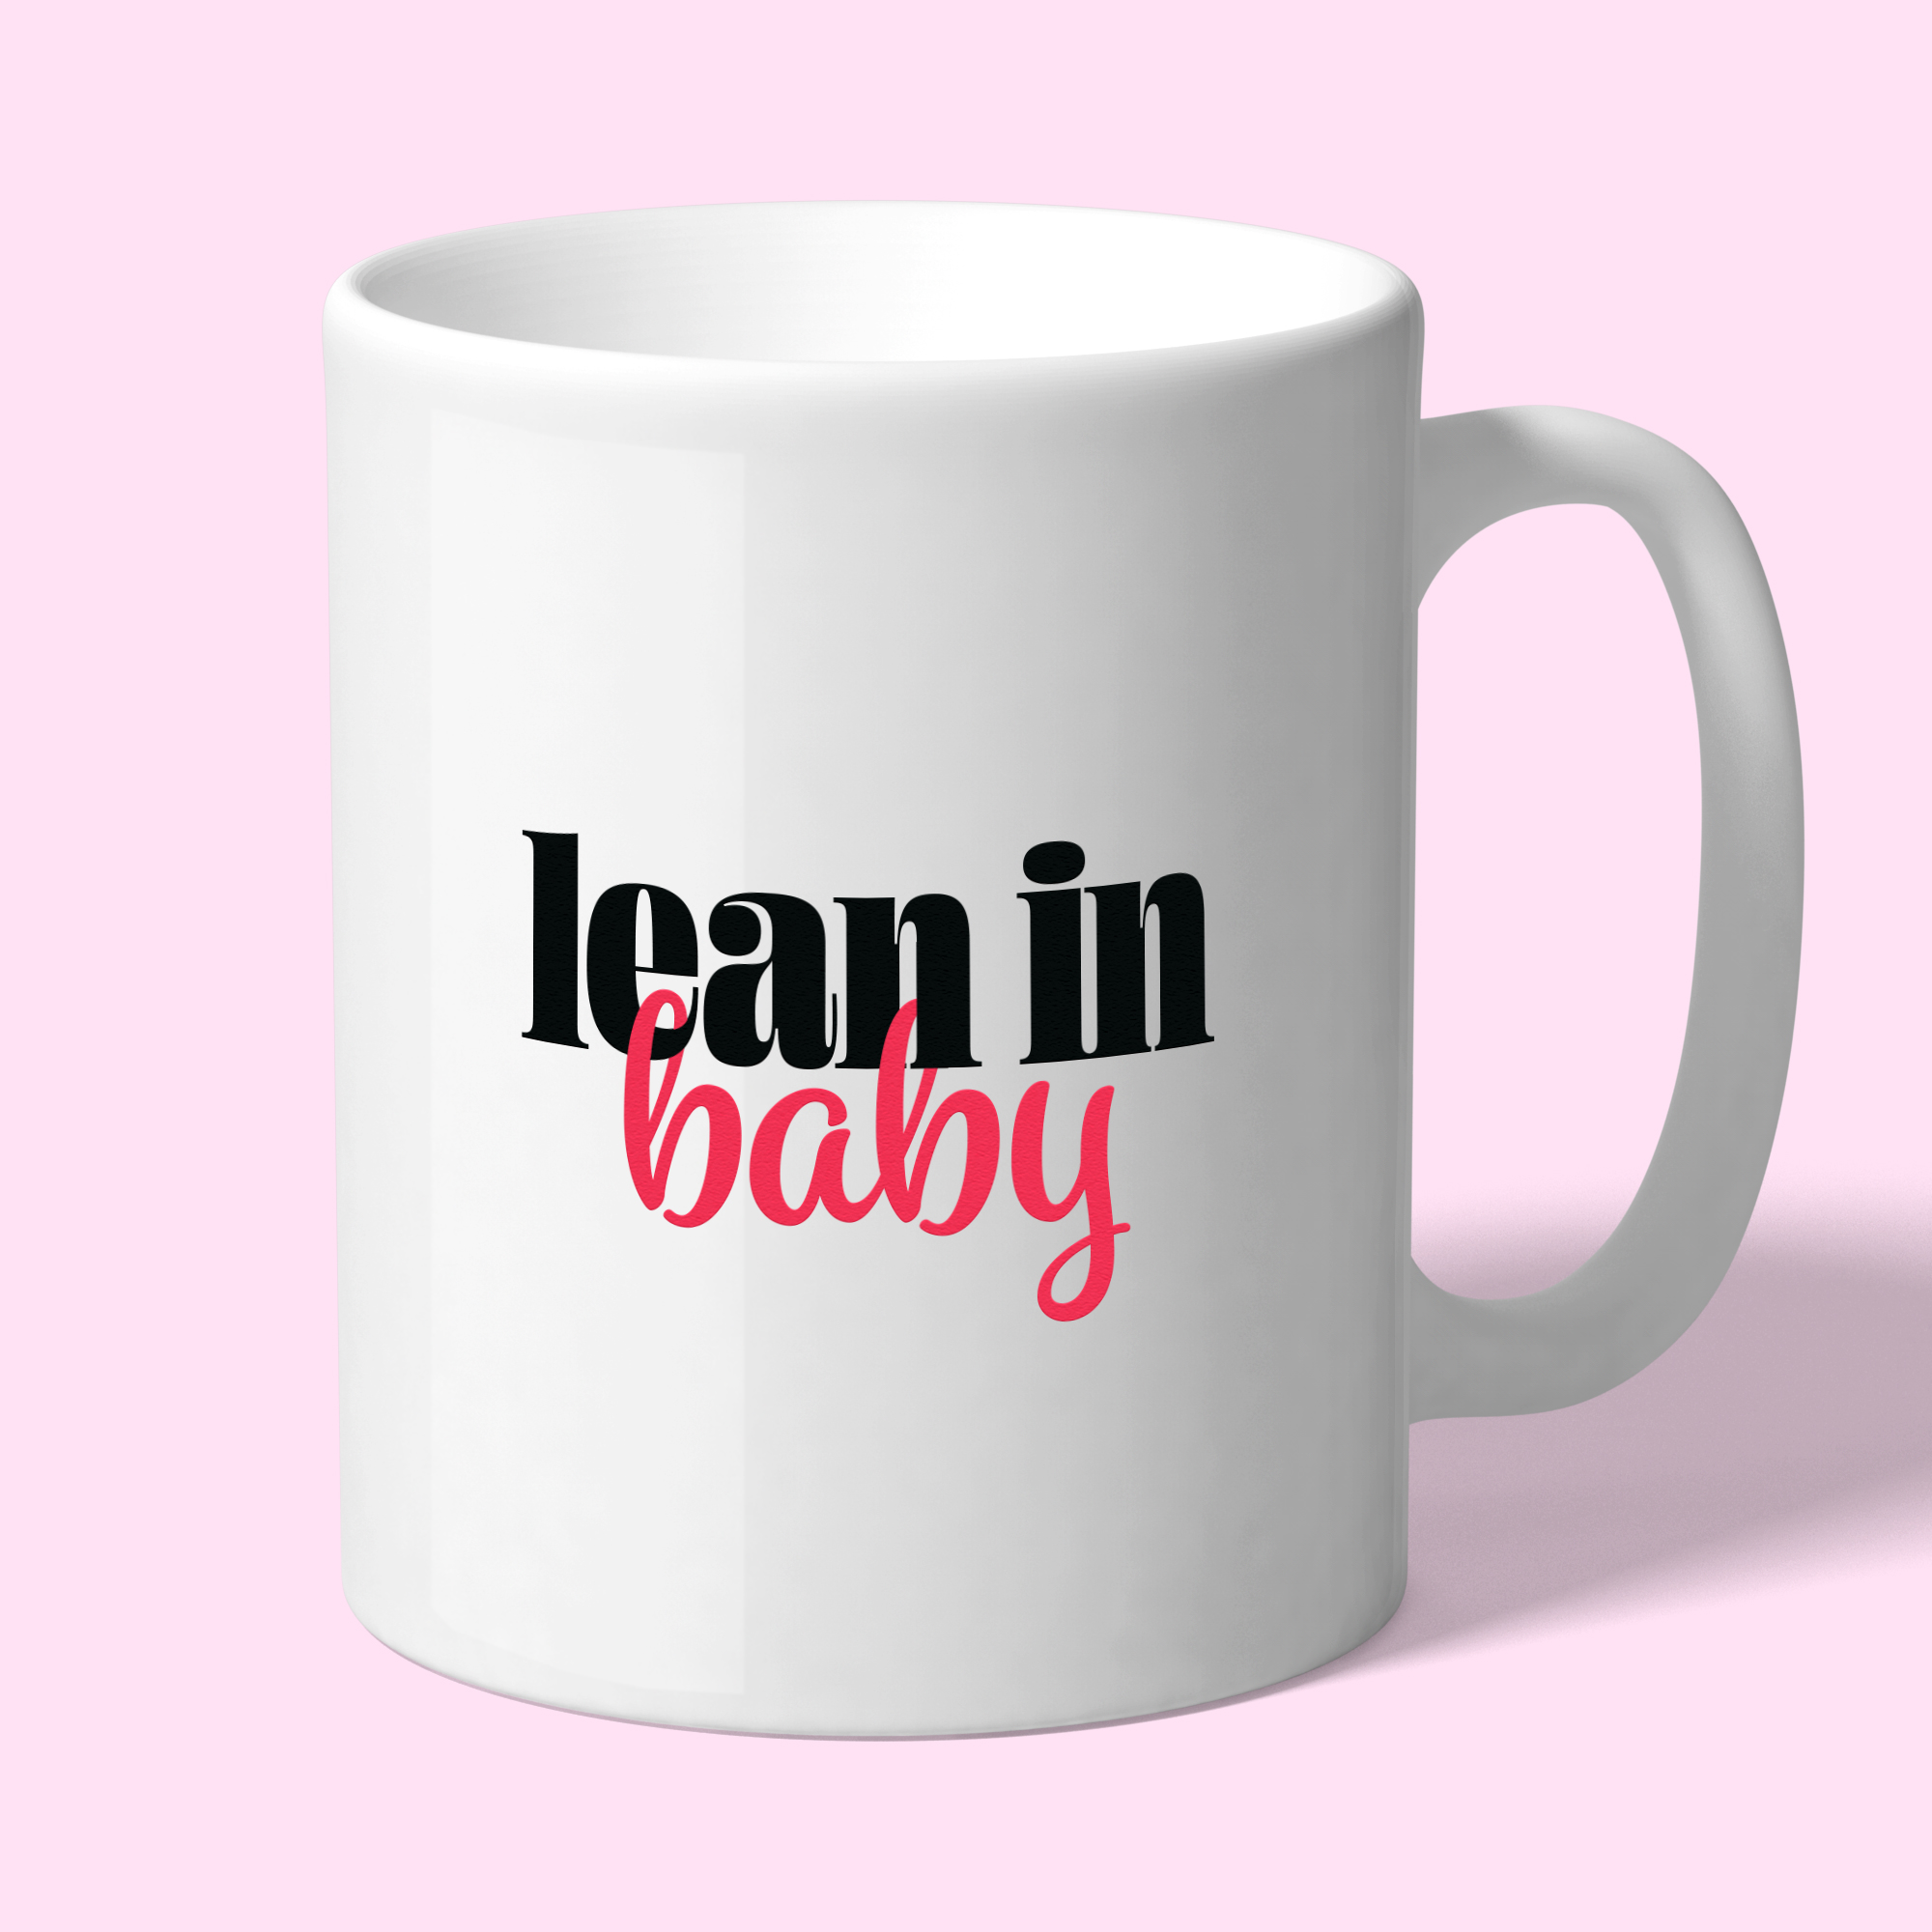 Lean in baby mug